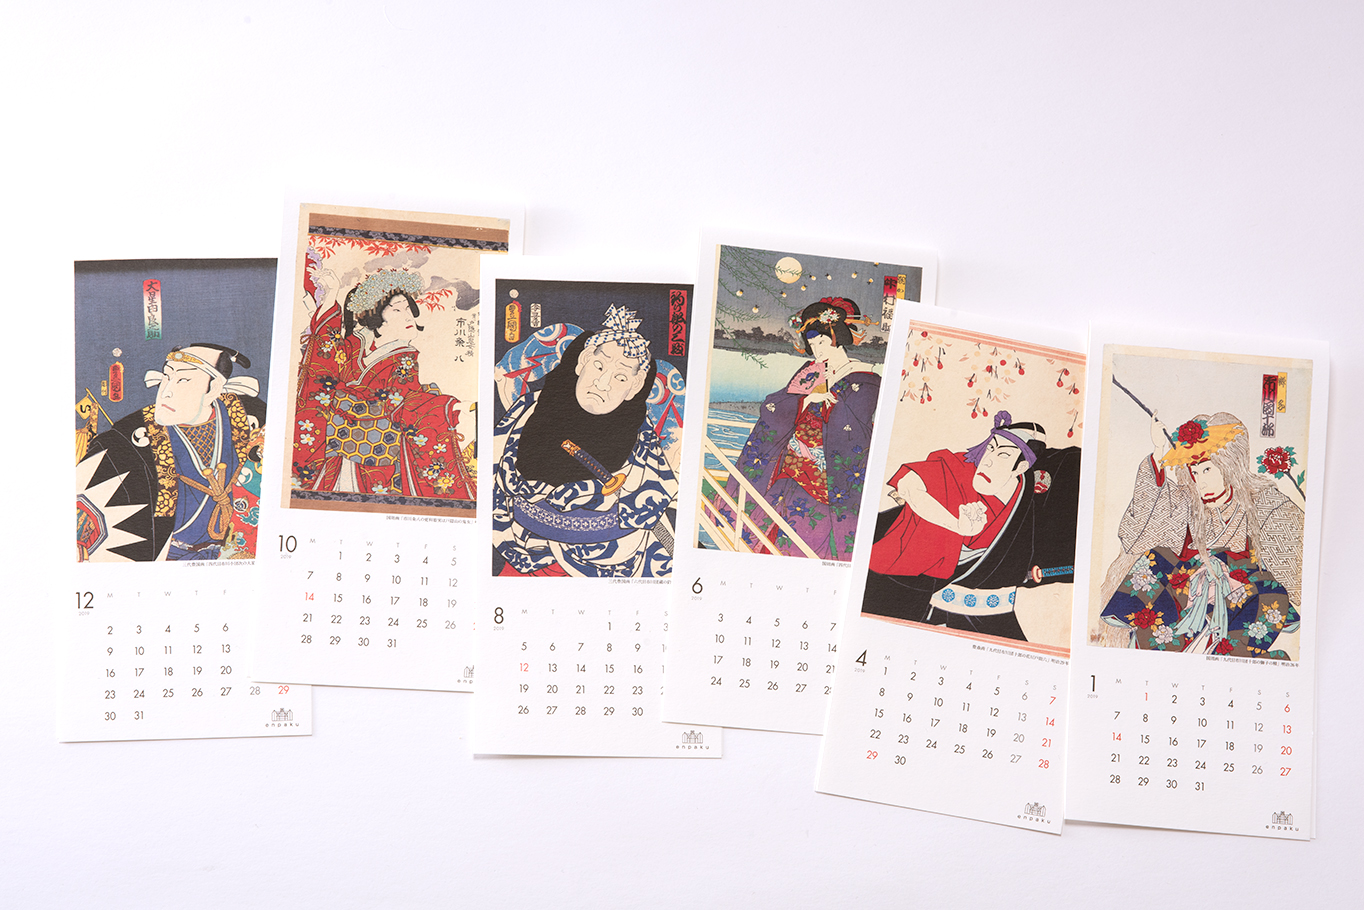 演劇博物館様のオリジナル浮世絵卓上カレンダーの各月の展開